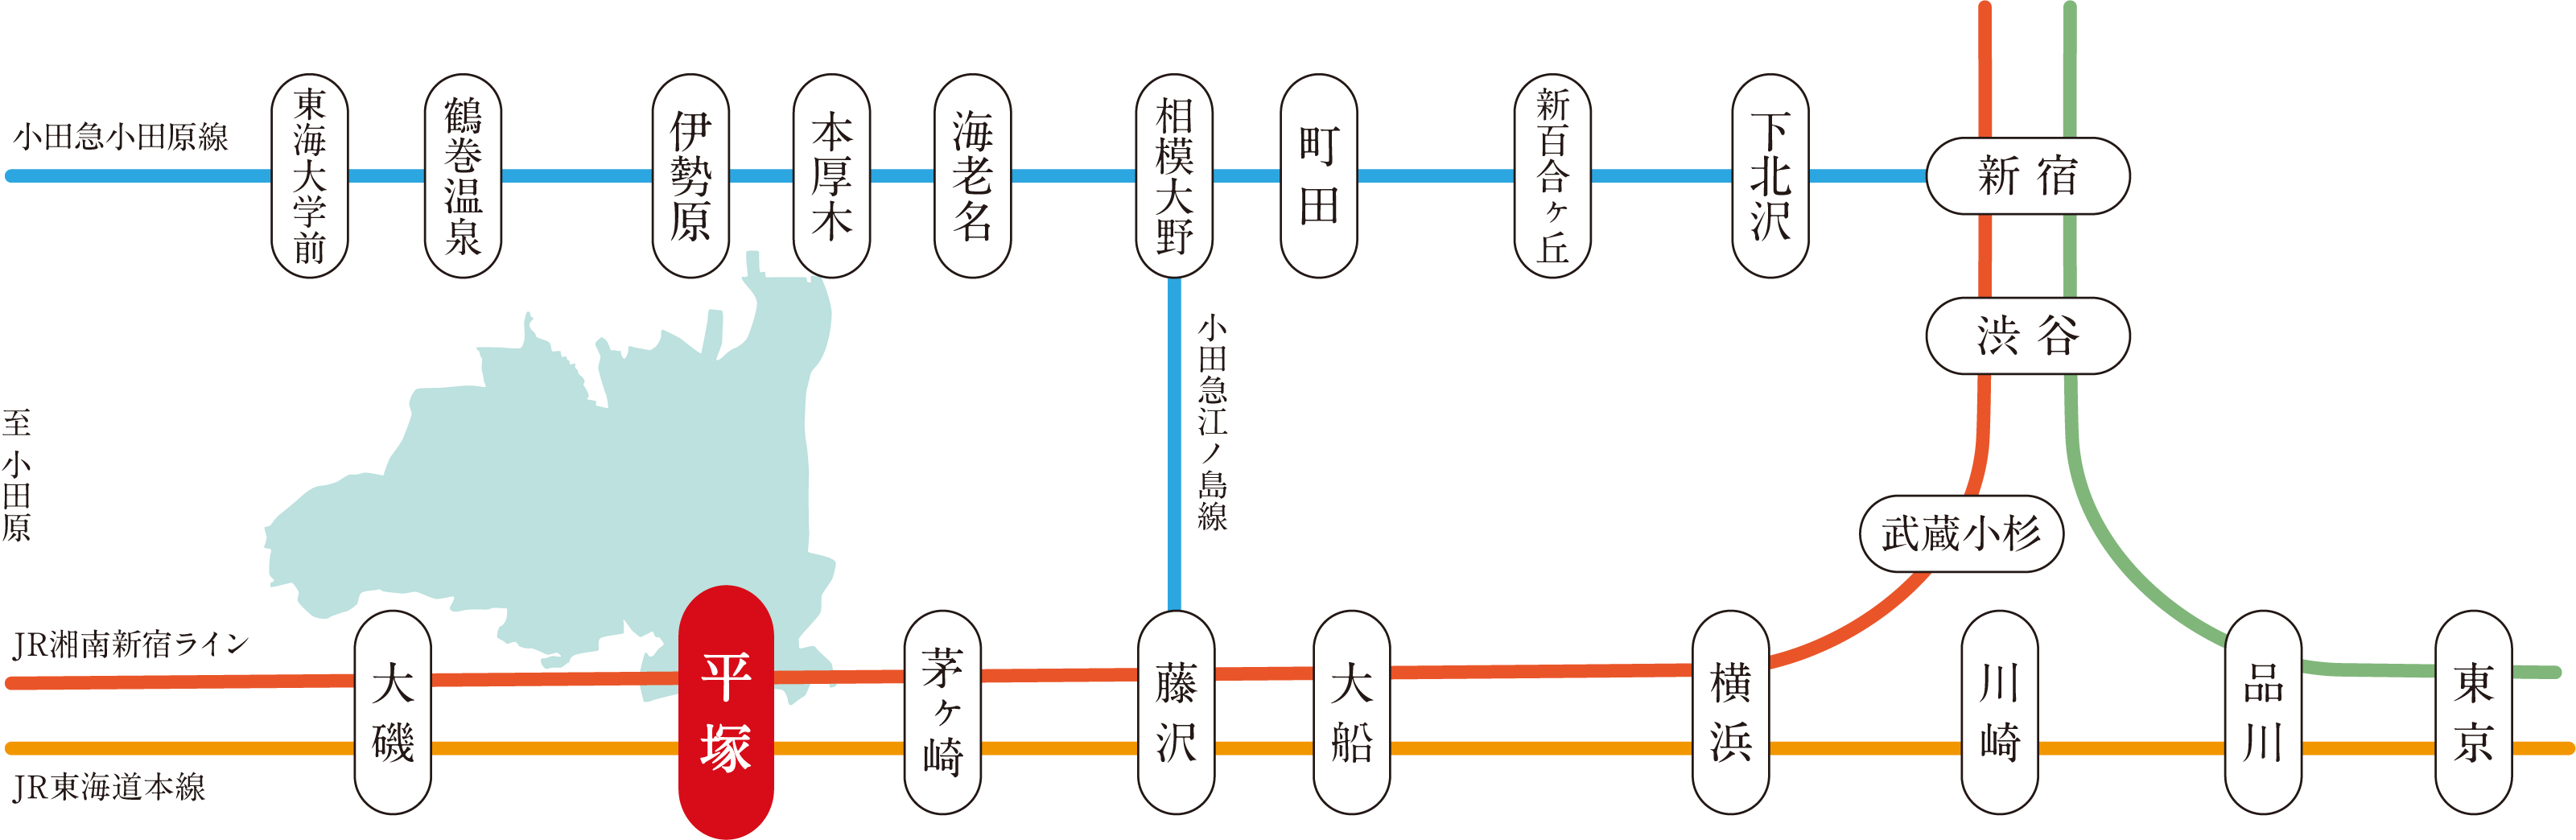 平塚駅の場所を示したJR東海道線・湘南新宿ライン路線図の画像